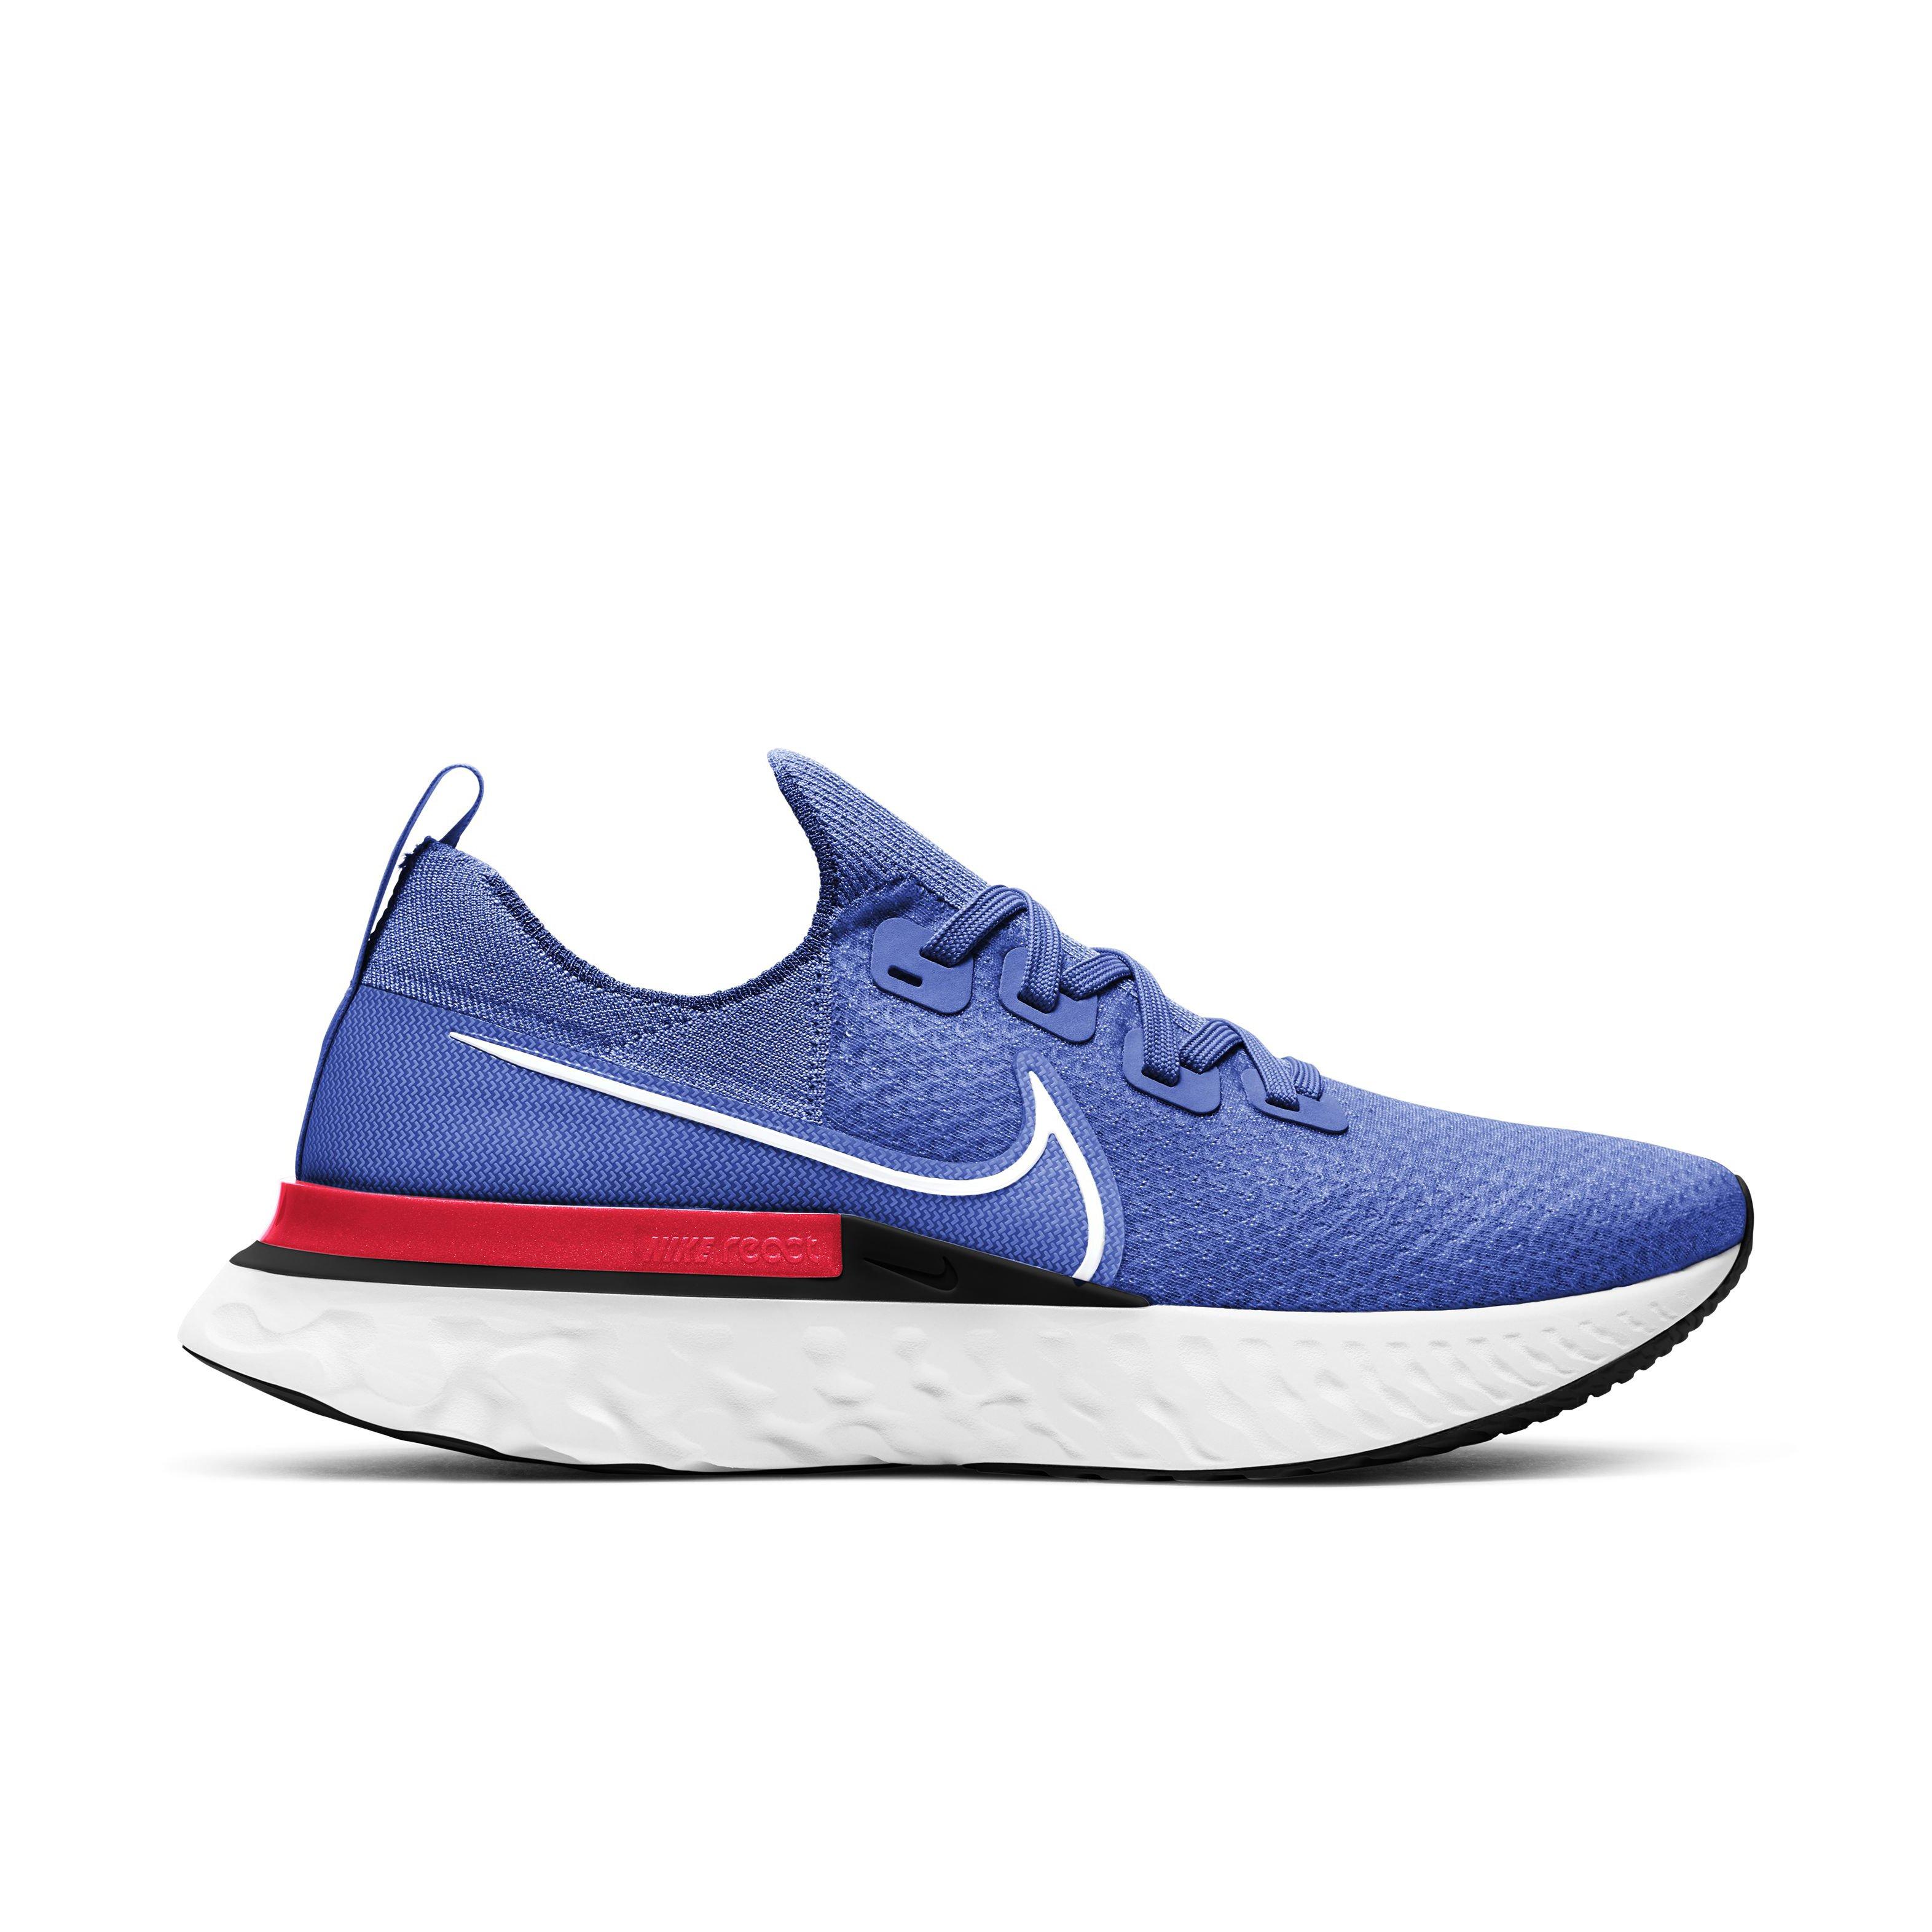 Nike Infinity "Racer Blue/Bright Men's Running Shoe